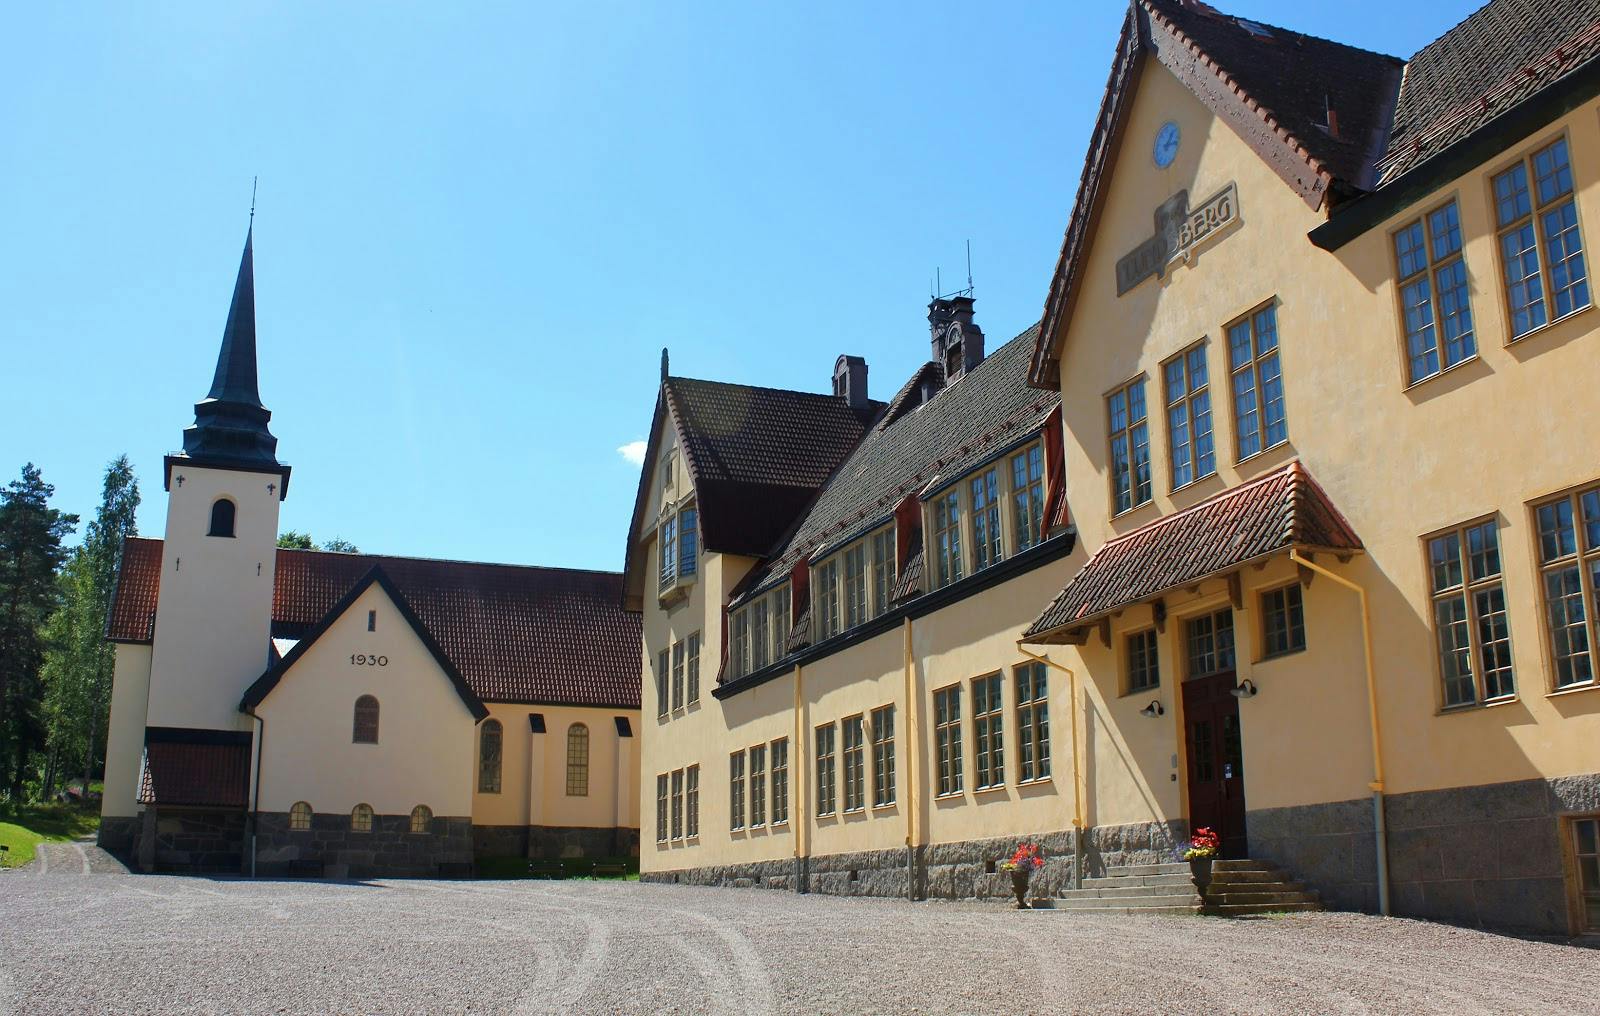 Lundsbergs Skola i Storfors